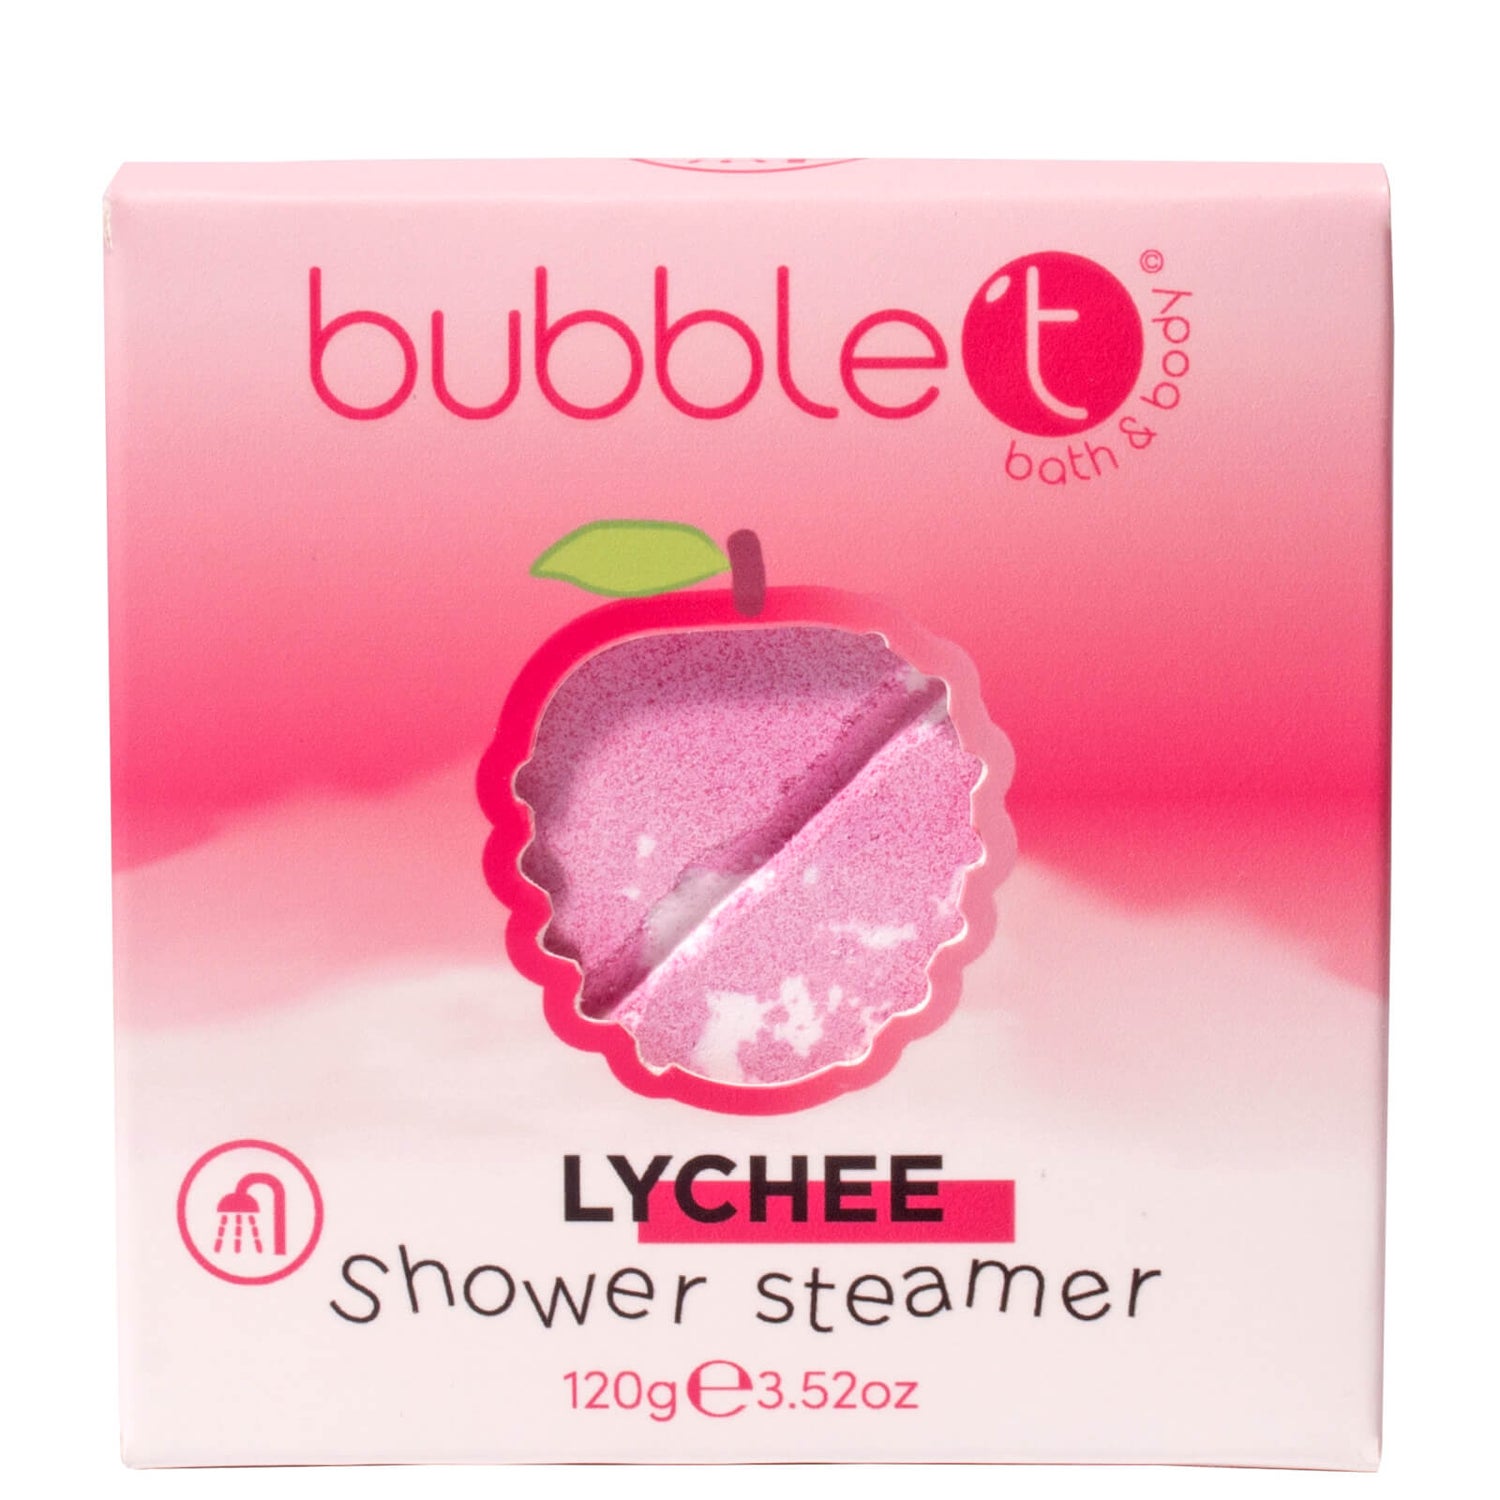 Bubble T Shower Steamer - Lychee